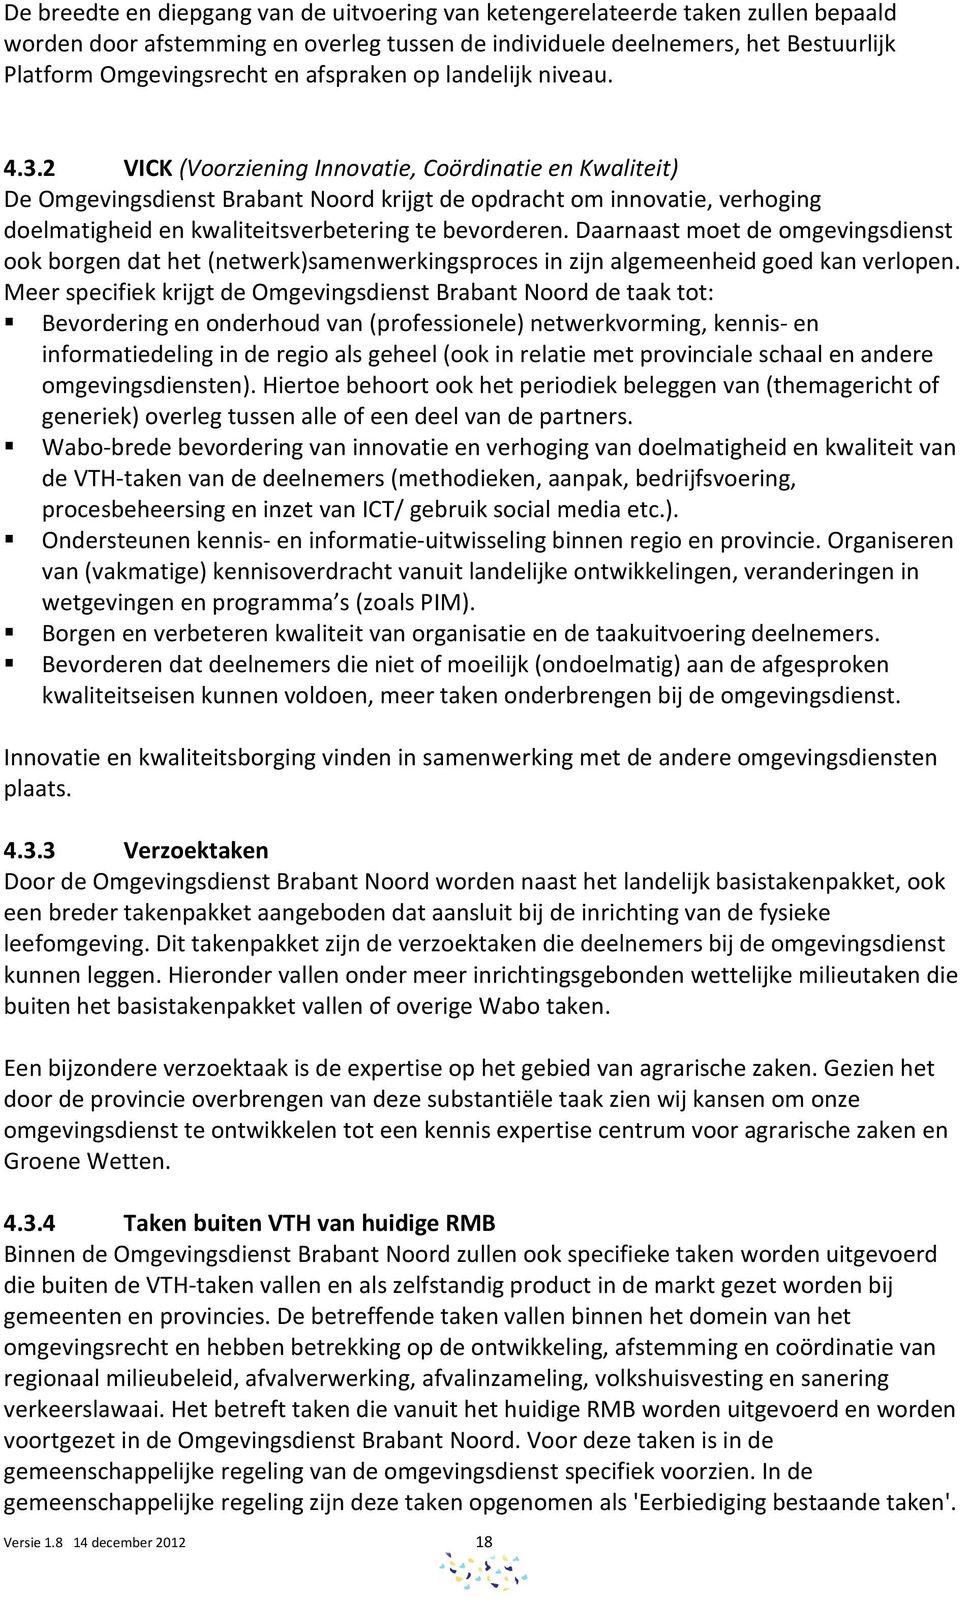 2 VICK (Voorziening Innovatie, Coördinatie en Kwaliteit) De Omgevingsdienst Brabant Noord krijgt de opdracht om innovatie, verhoging doelmatigheid en kwaliteitsverbetering te bevorderen.